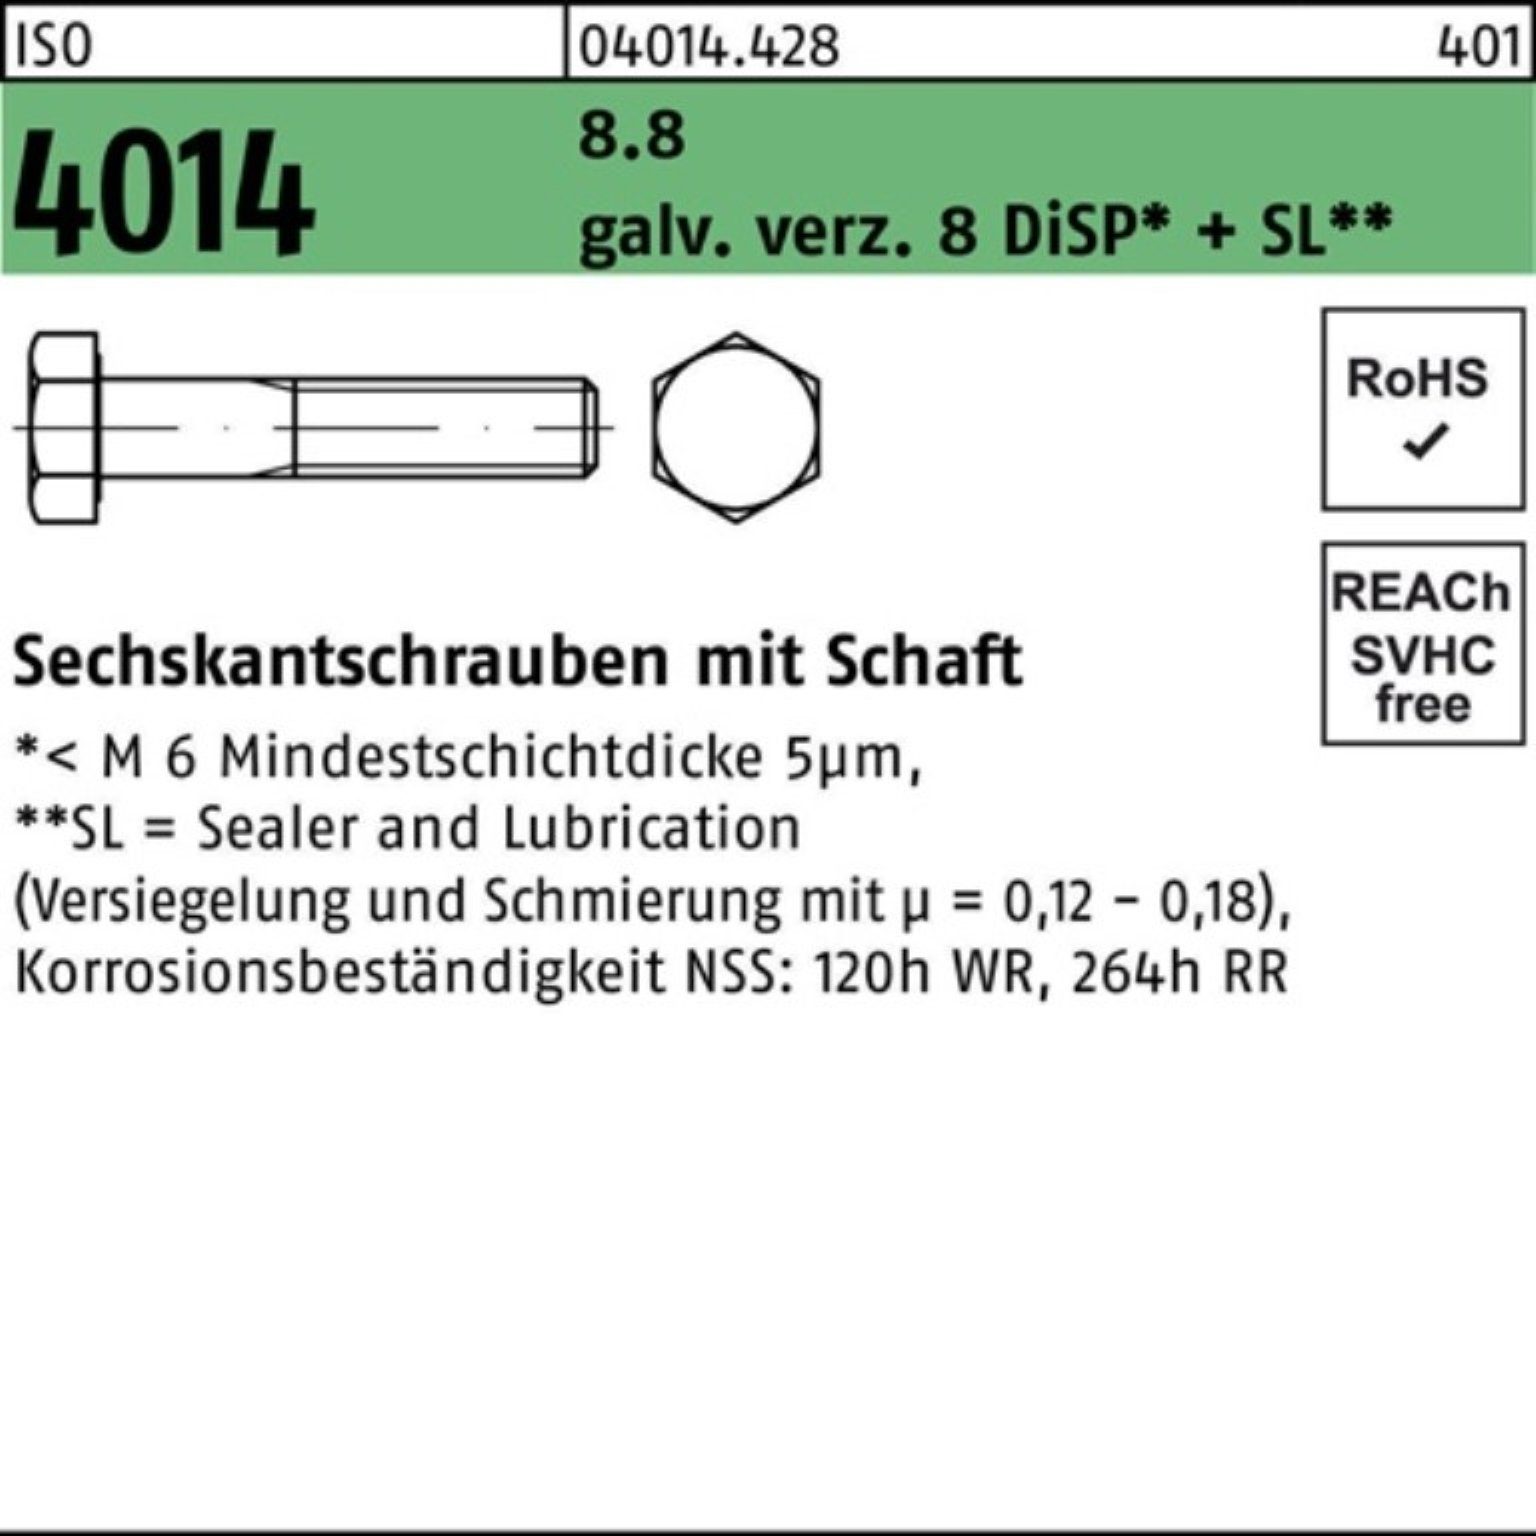 Bufab Sechskantschraube 8.8 M16x140 ISO 8 Schaft Pack 100er galv.verz. 4014 Sechskantschraube